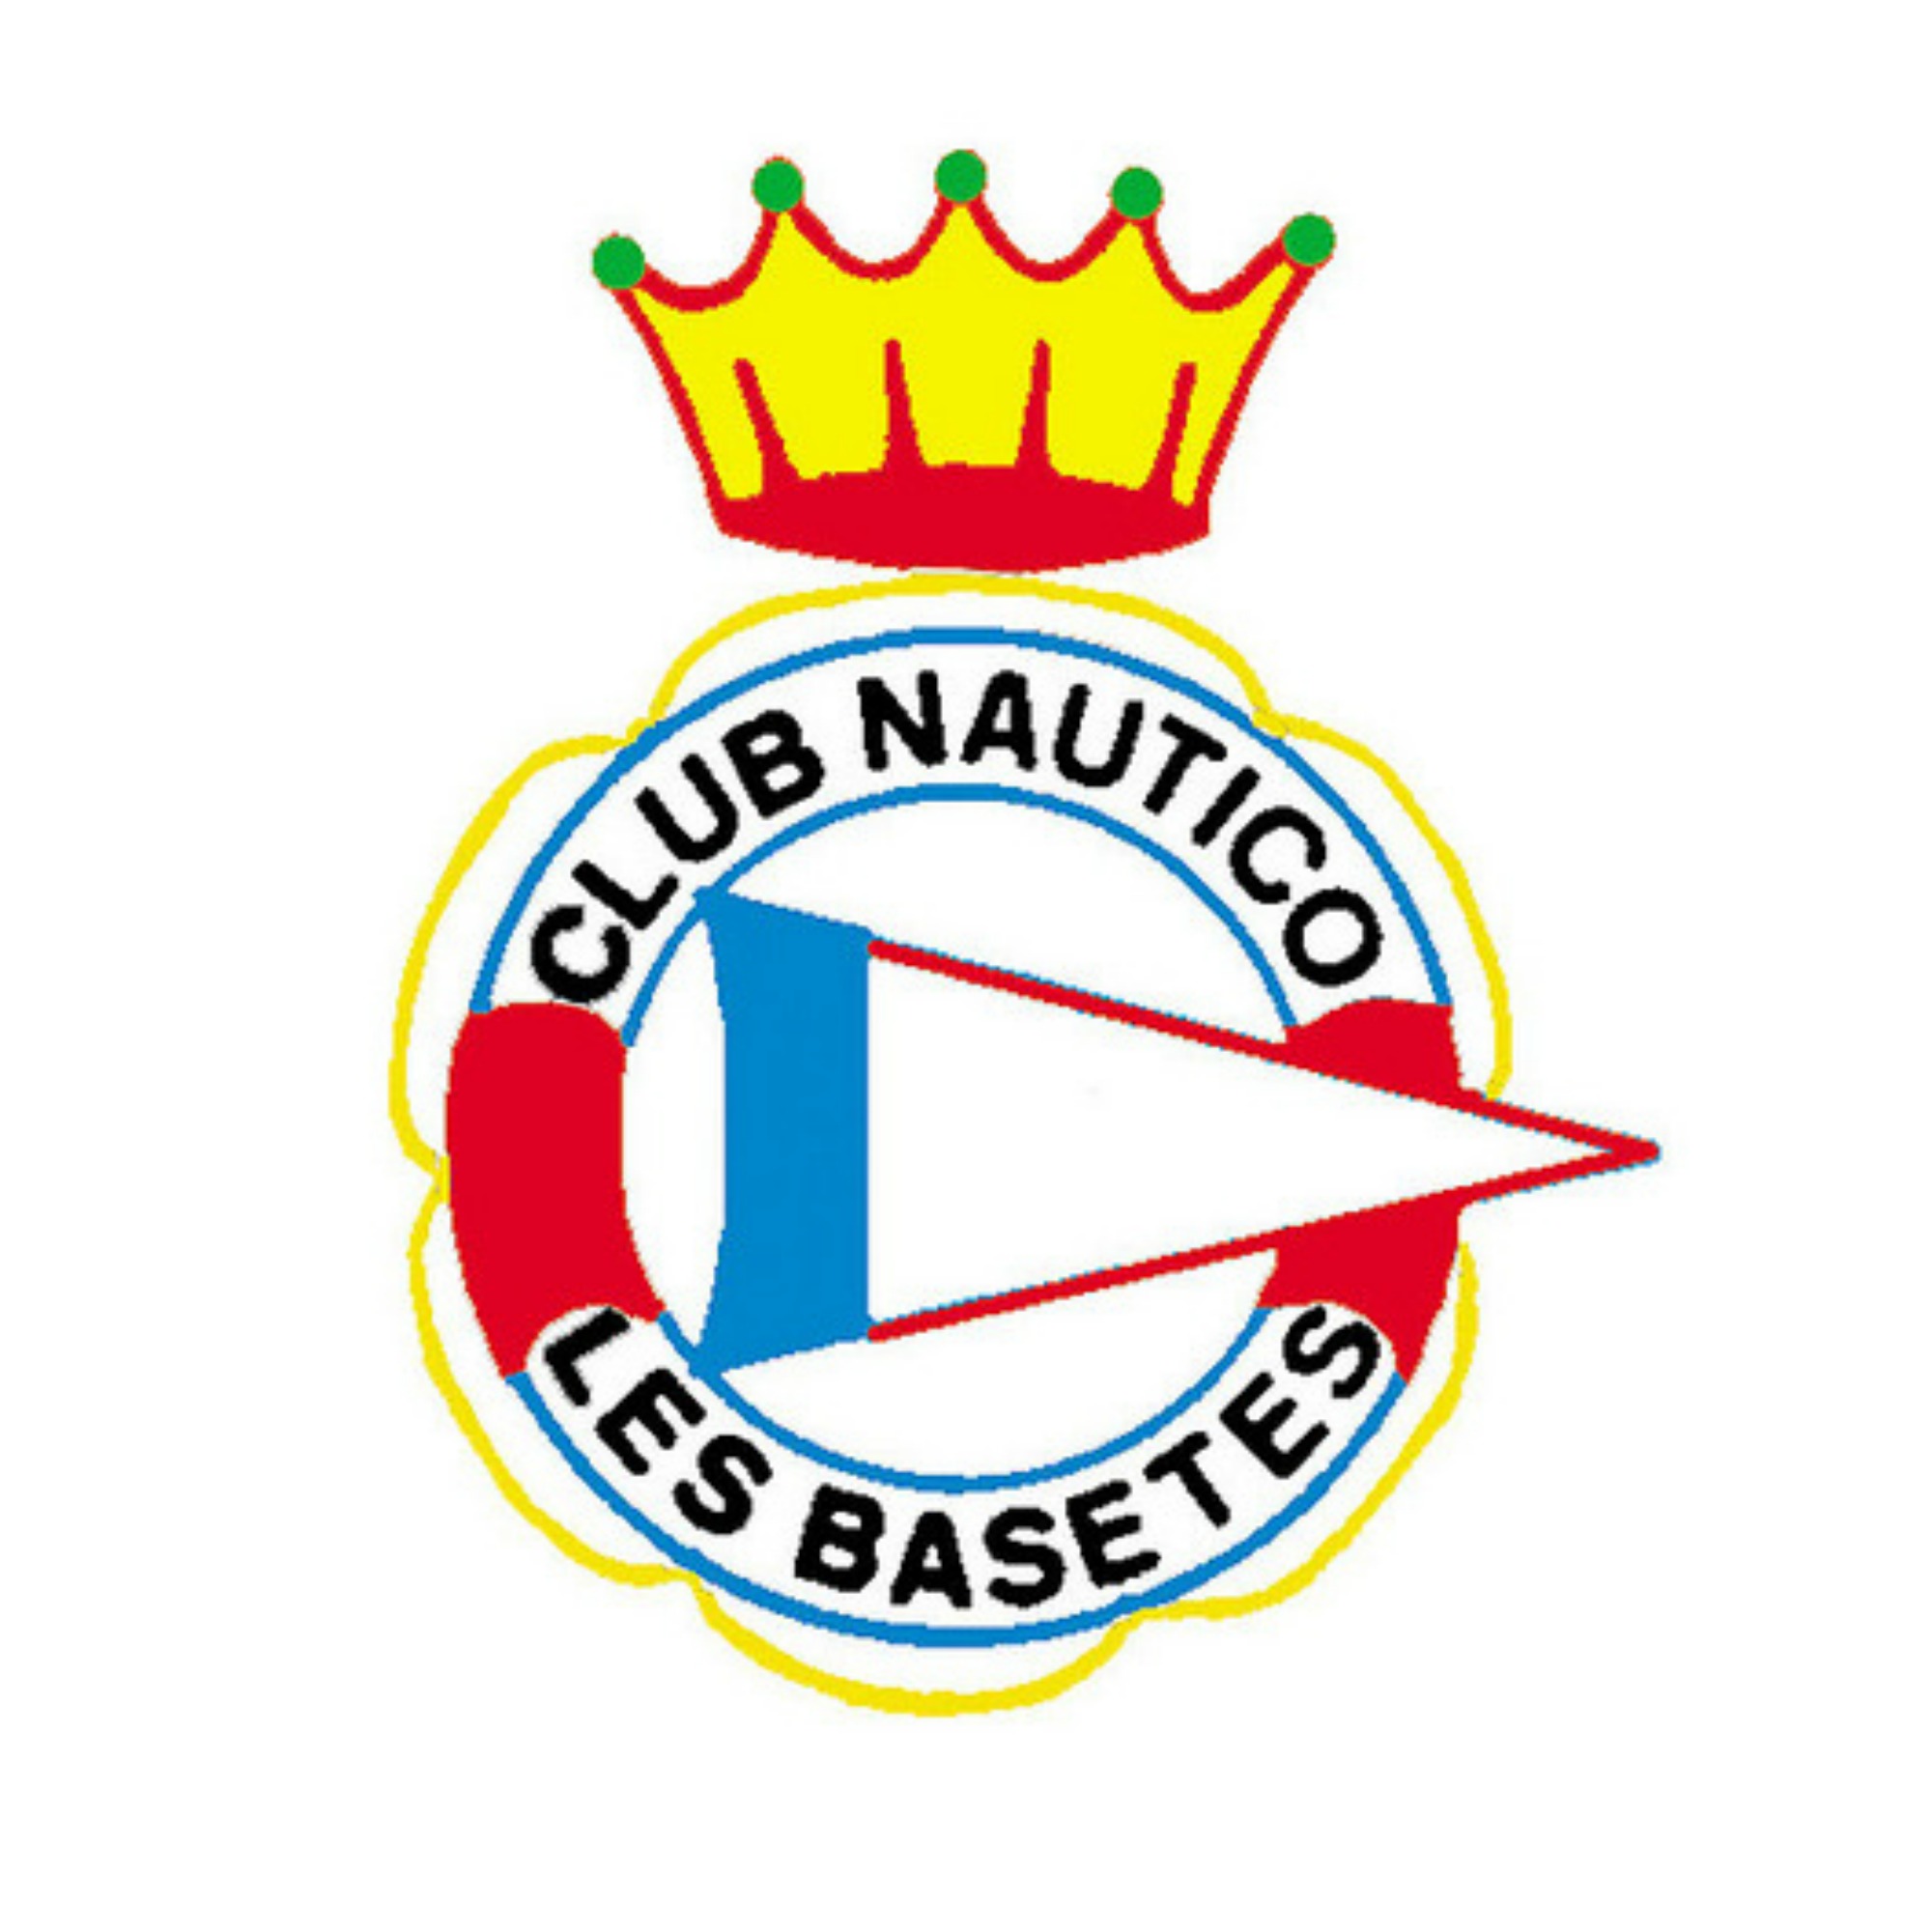 Club Náutico (club nautique) Les Basetes 